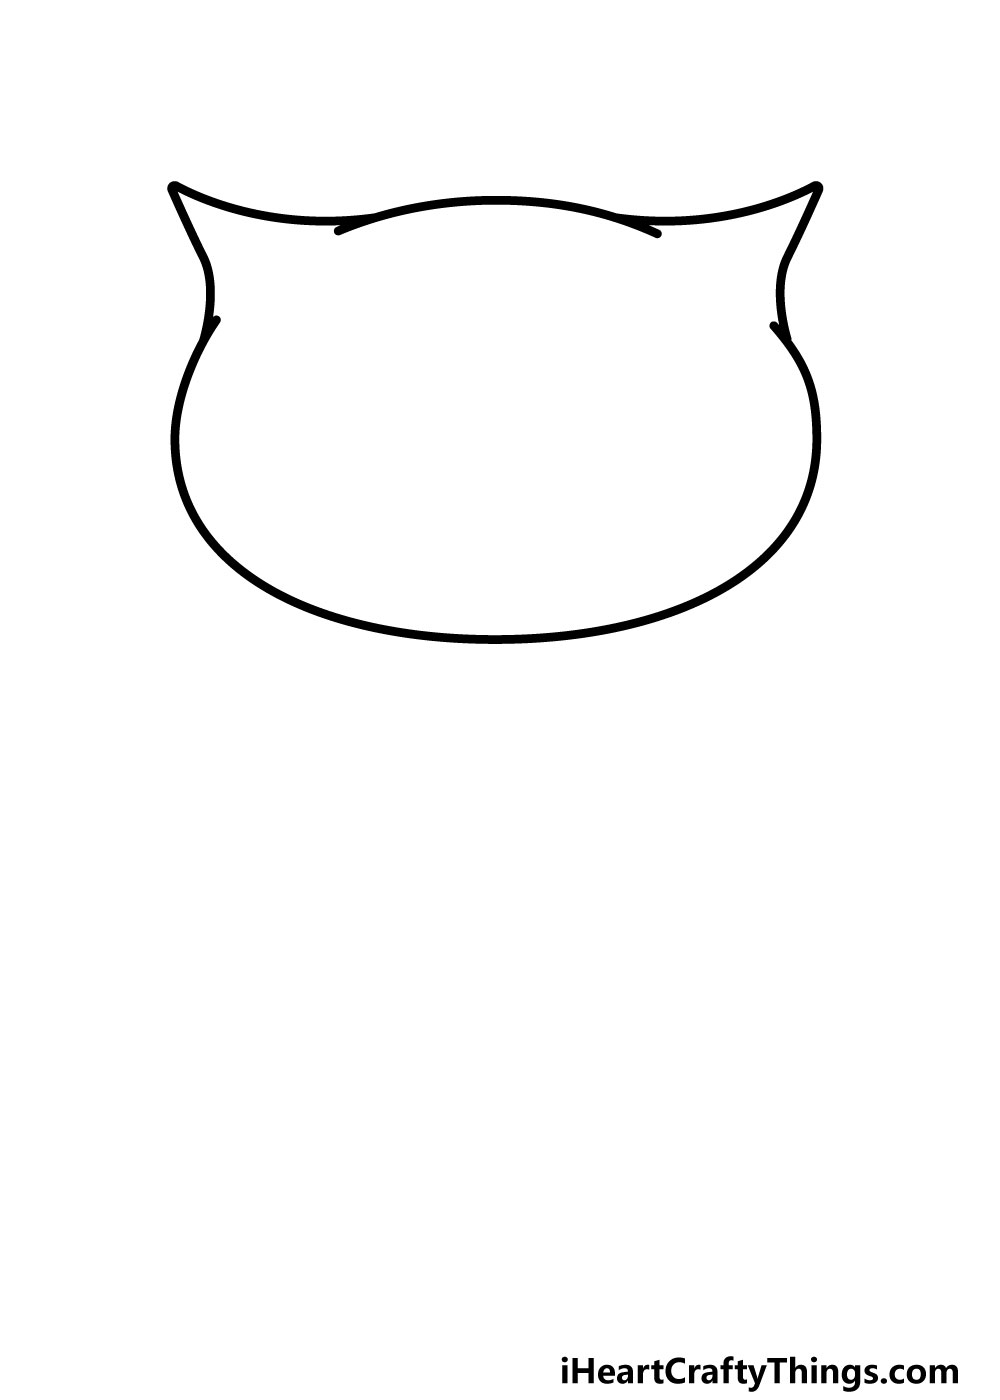 Drawing Owl Step 2 - Hướng dẫn chi tiết cách vẽ cú mèo đơn giản gồm 9 bước cơ bản